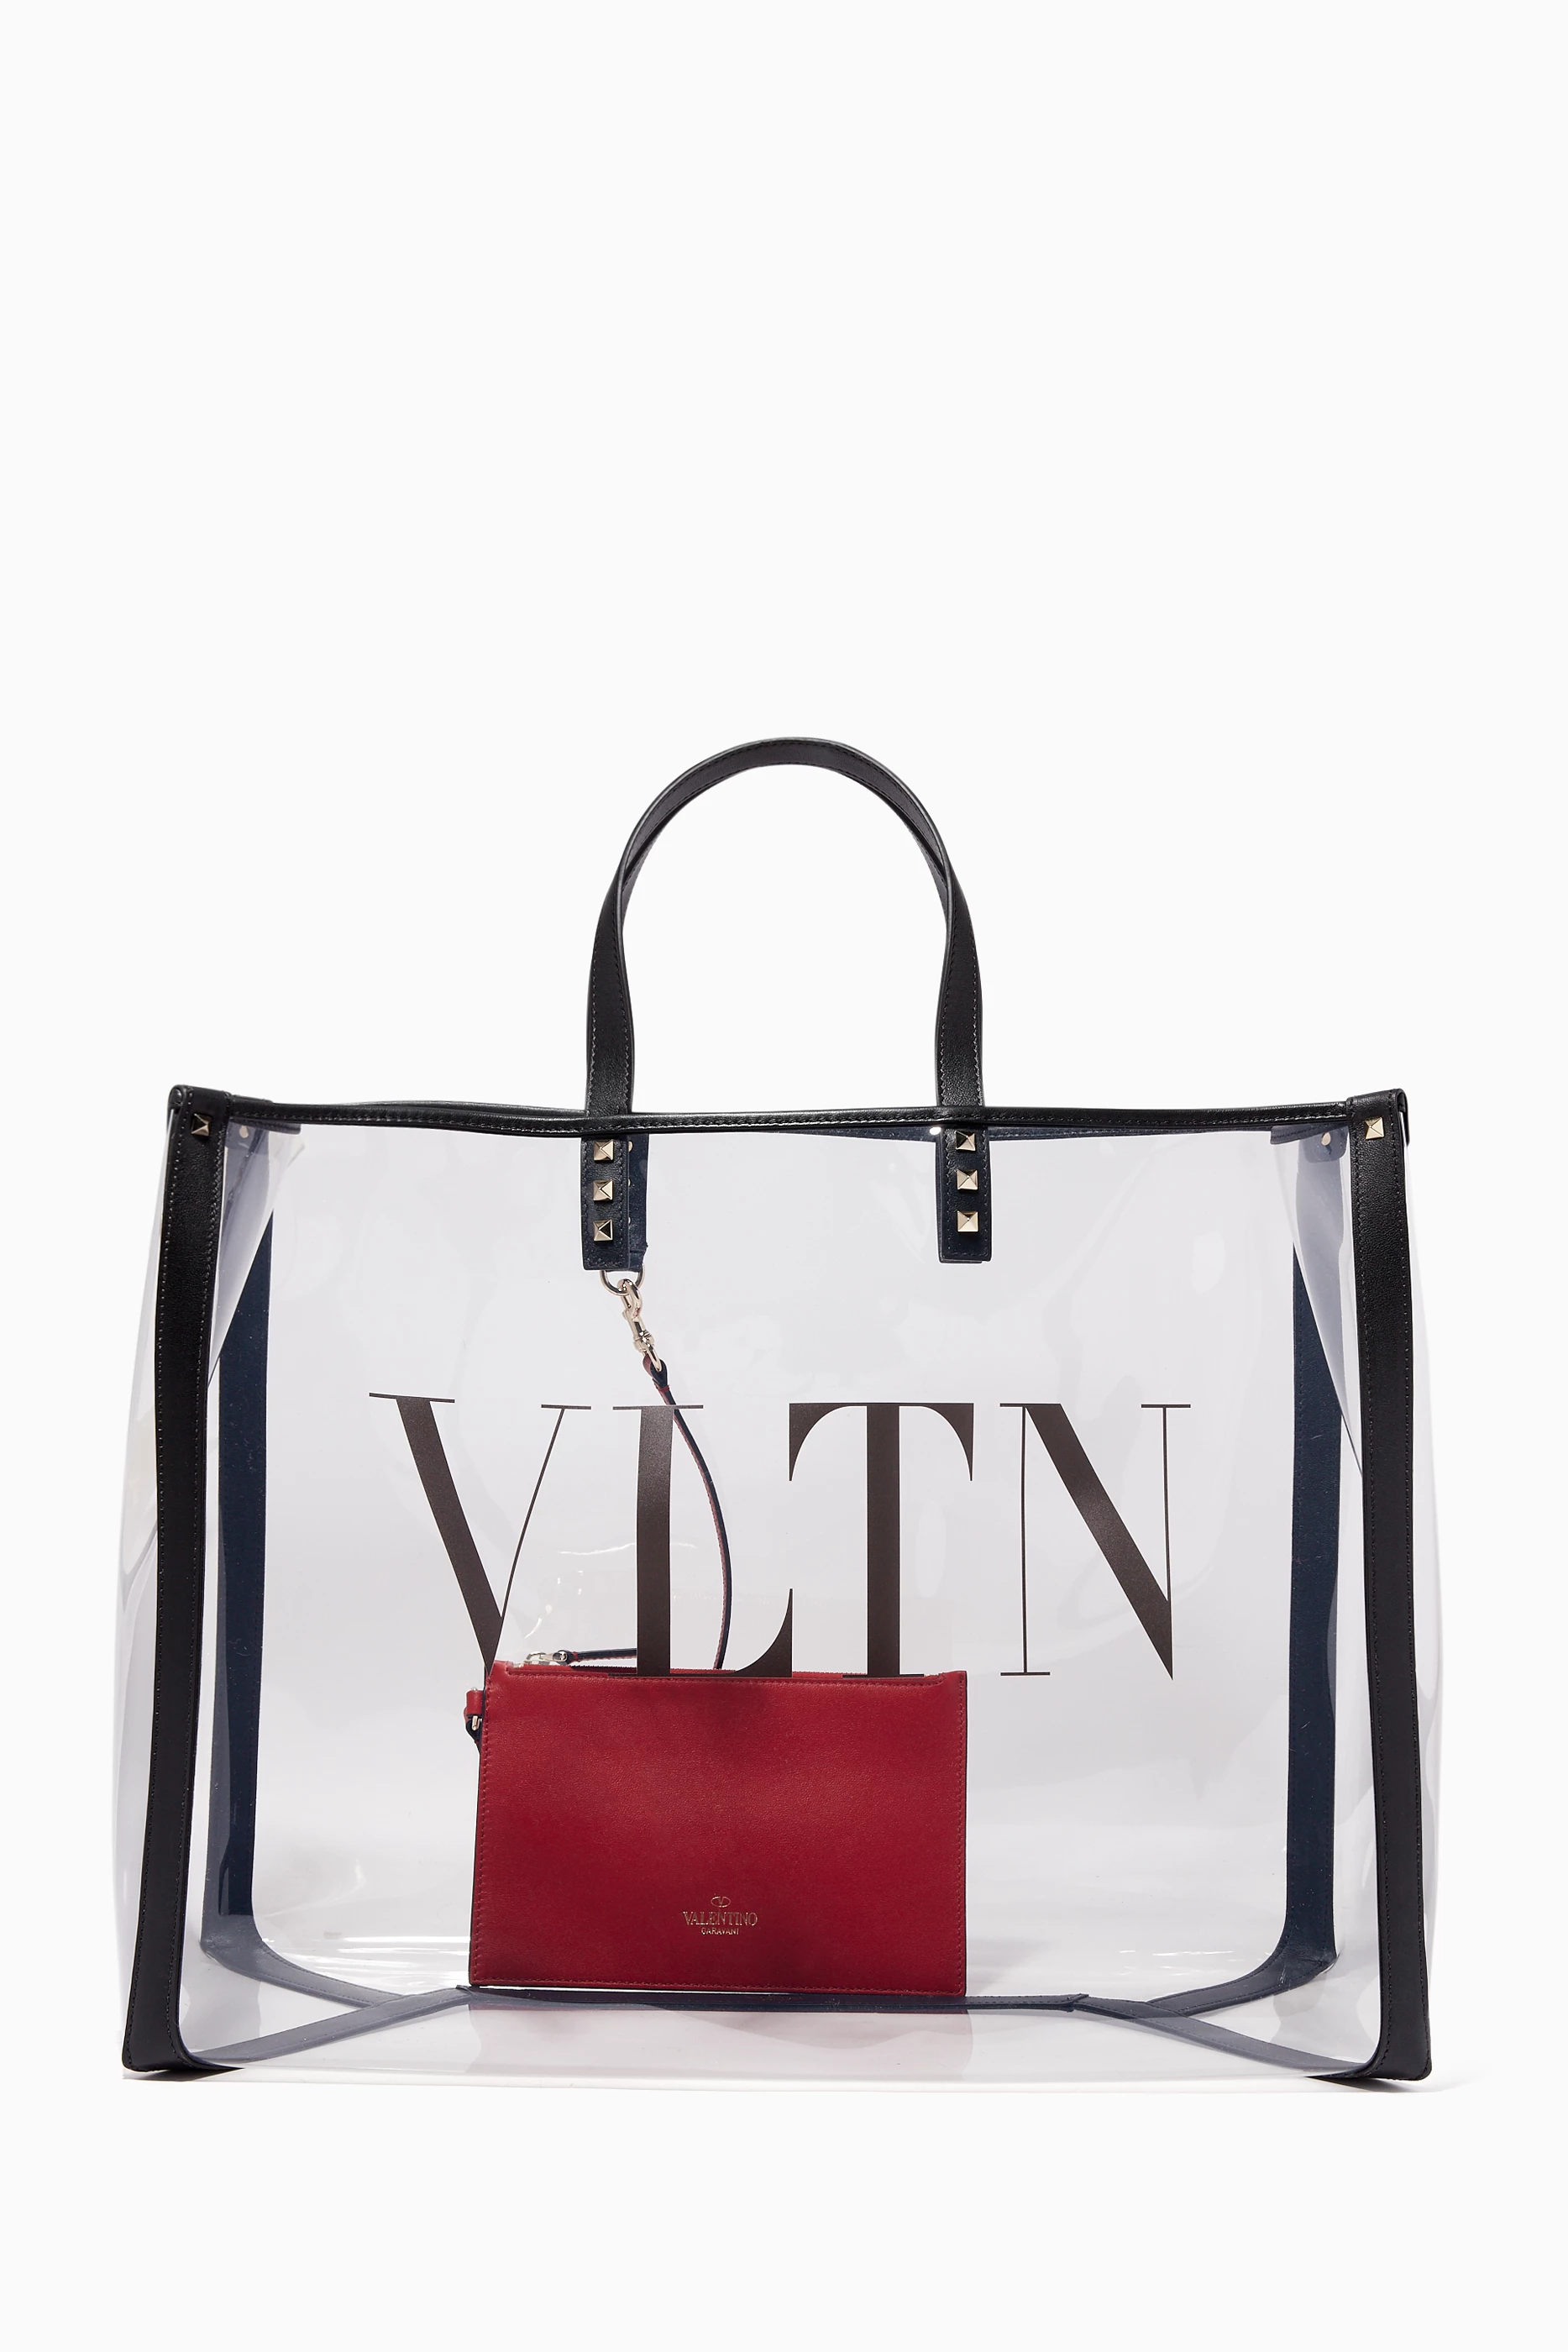 Valentino VLTN Plexy Bag